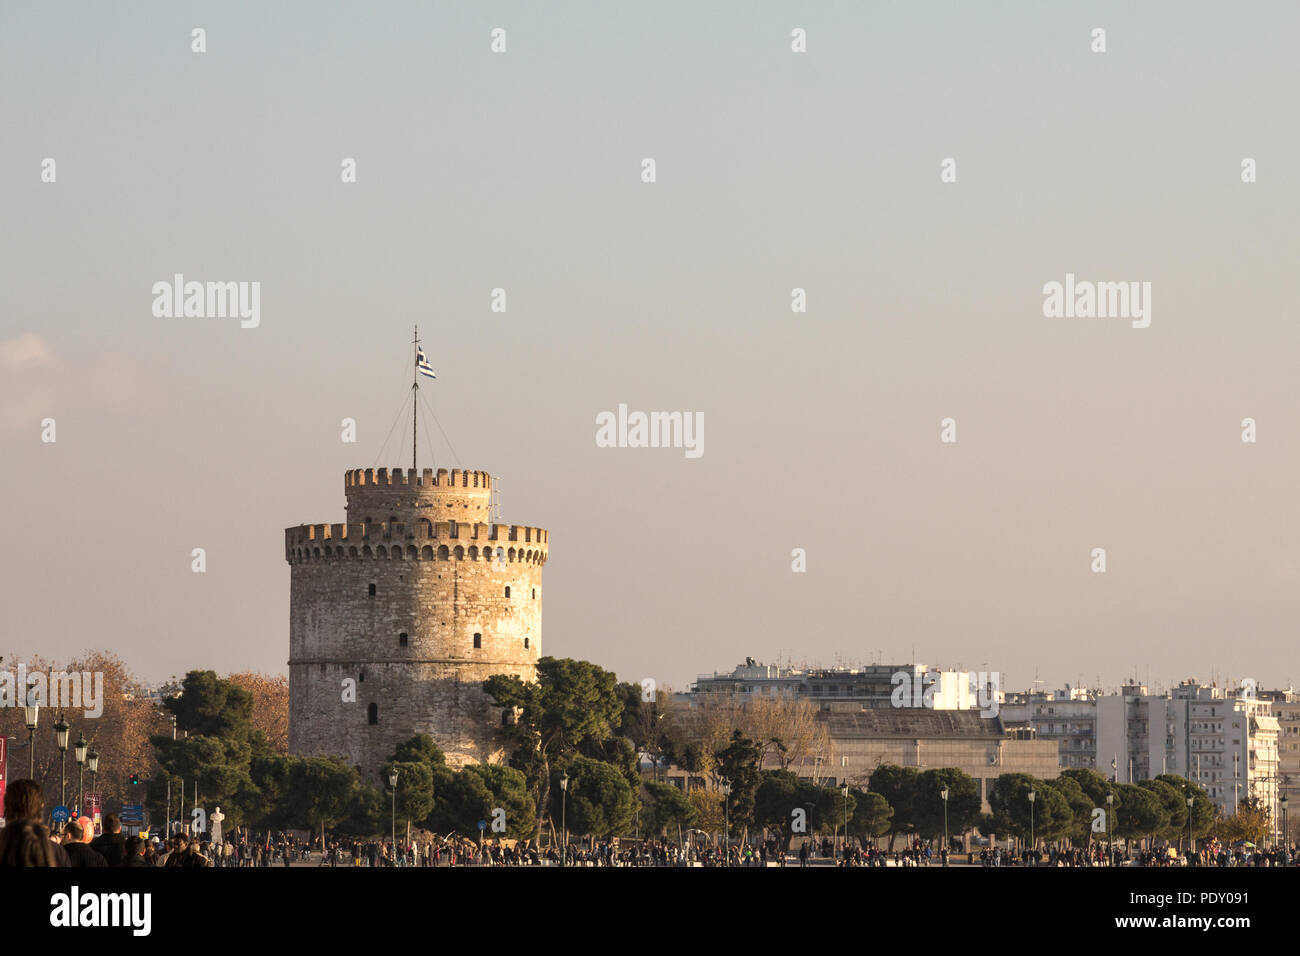 THESSALONIKI, Griechenland - 26. Dezember 2015: Weiße Turm von Thessaloniki direkt am Meer gesehen. Der Weiße Turm ist eines der ikonischen Sehenswürdigkeiten Thessanoliniki der Pi Stockfoto